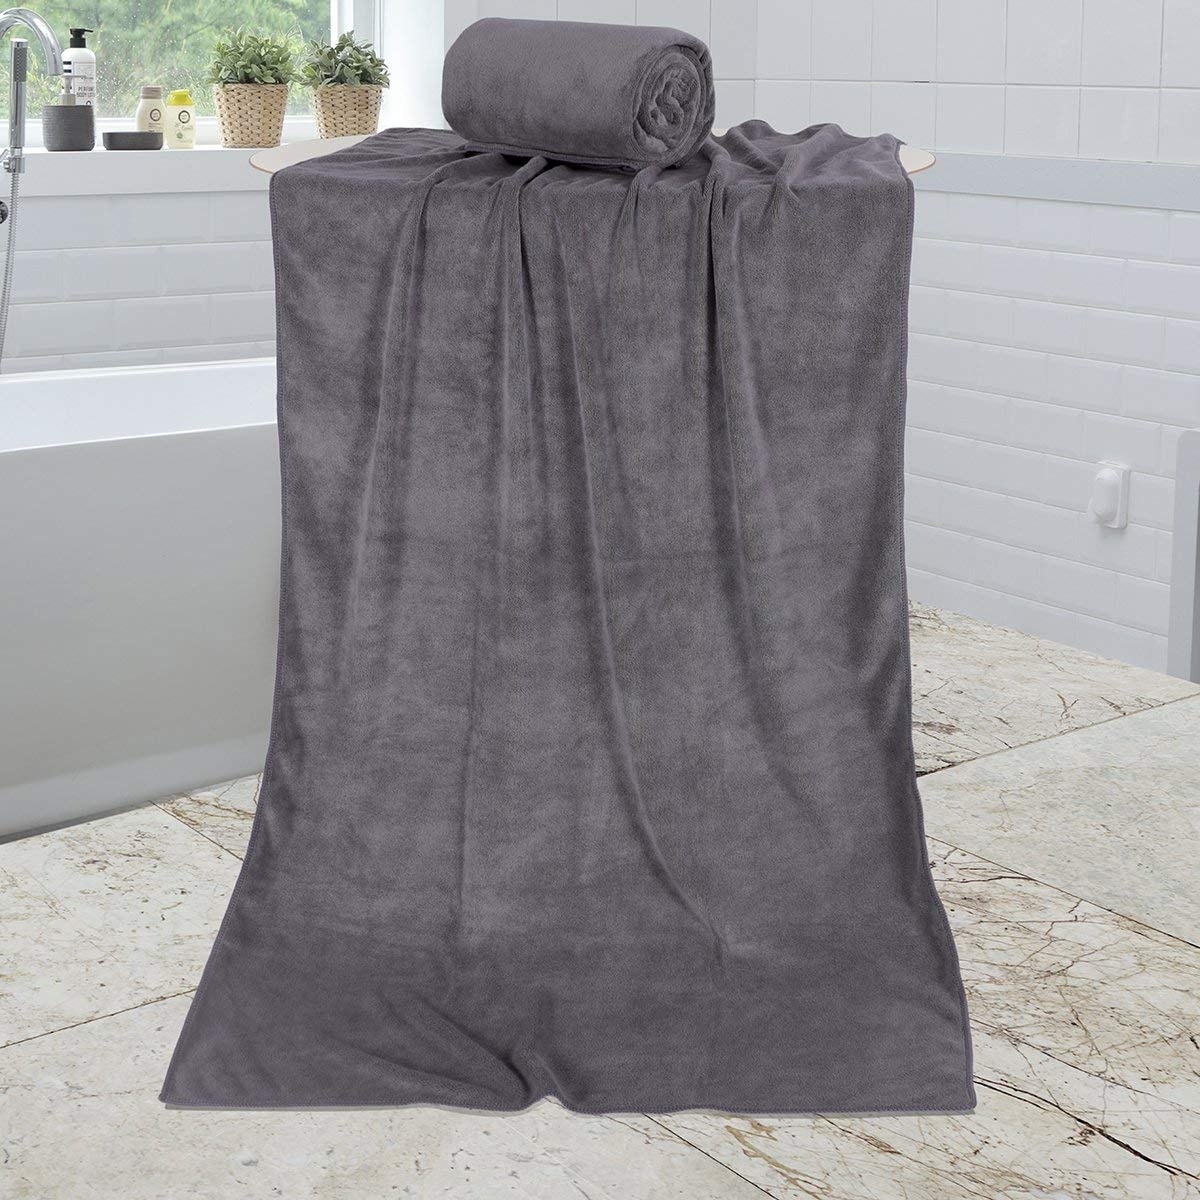 30"x60" Bath Towels (Set of 2) Super Soft Absorbent